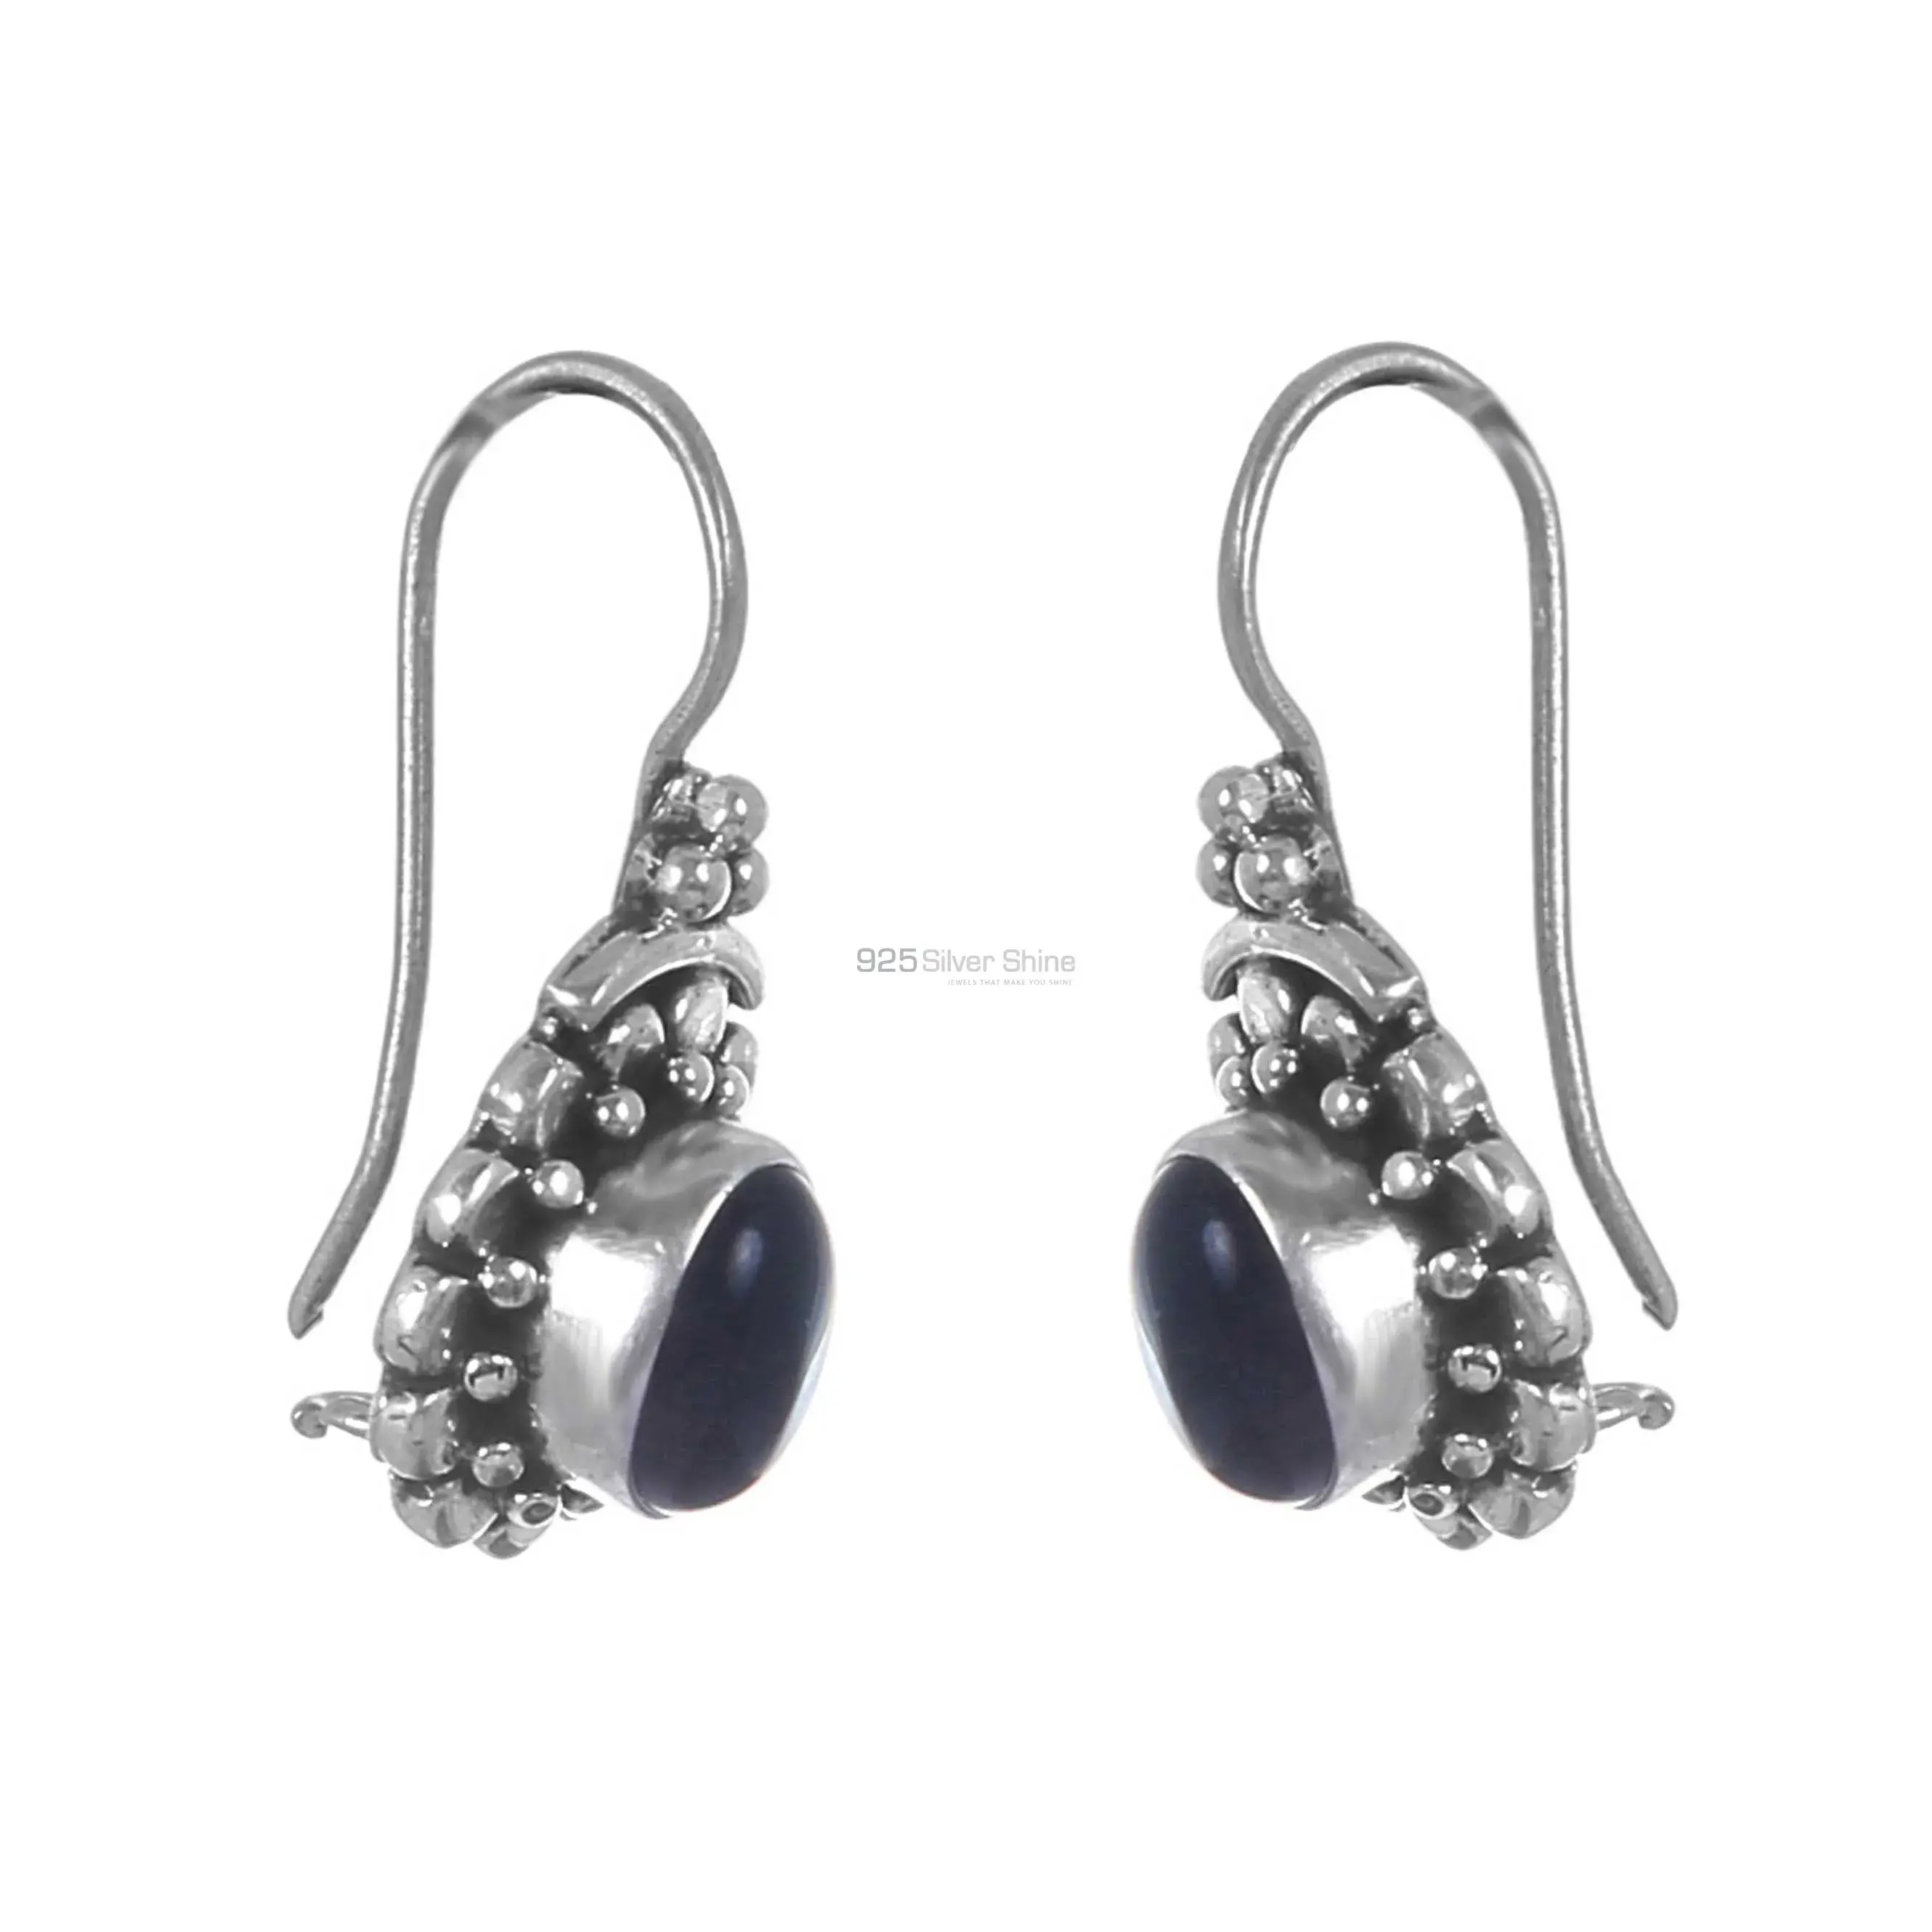 Black Onyx Gemstone Earrings In Sterling Silver Jewelry 925SE219_0